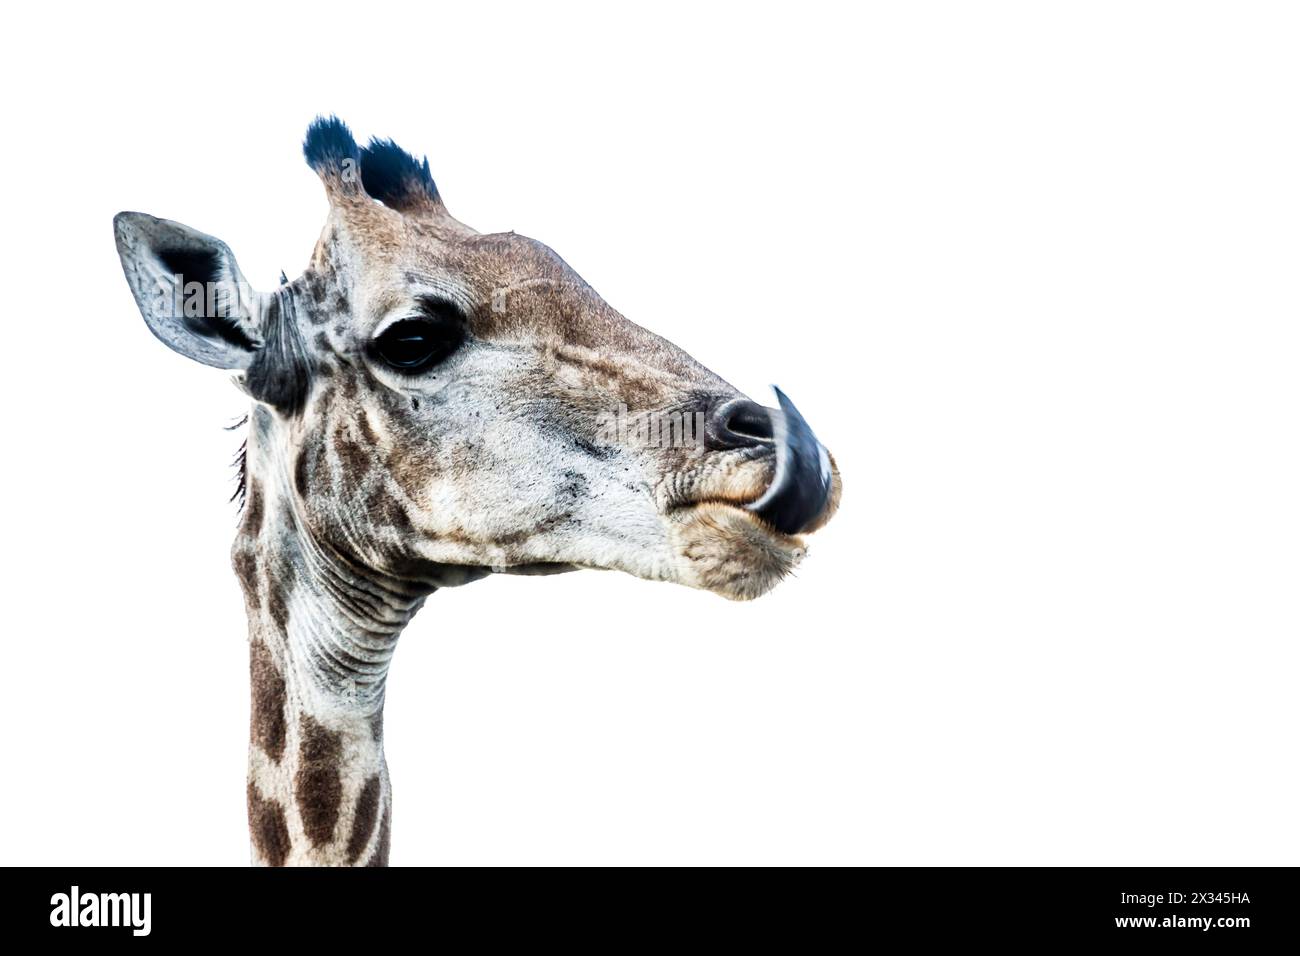 Girafe drôle portrait isolé sur fond blanc dans le parc national Kruger, Afrique du Sud ; espèce Giraffa camelopardalis famille des Giraffidae Banque D'Images